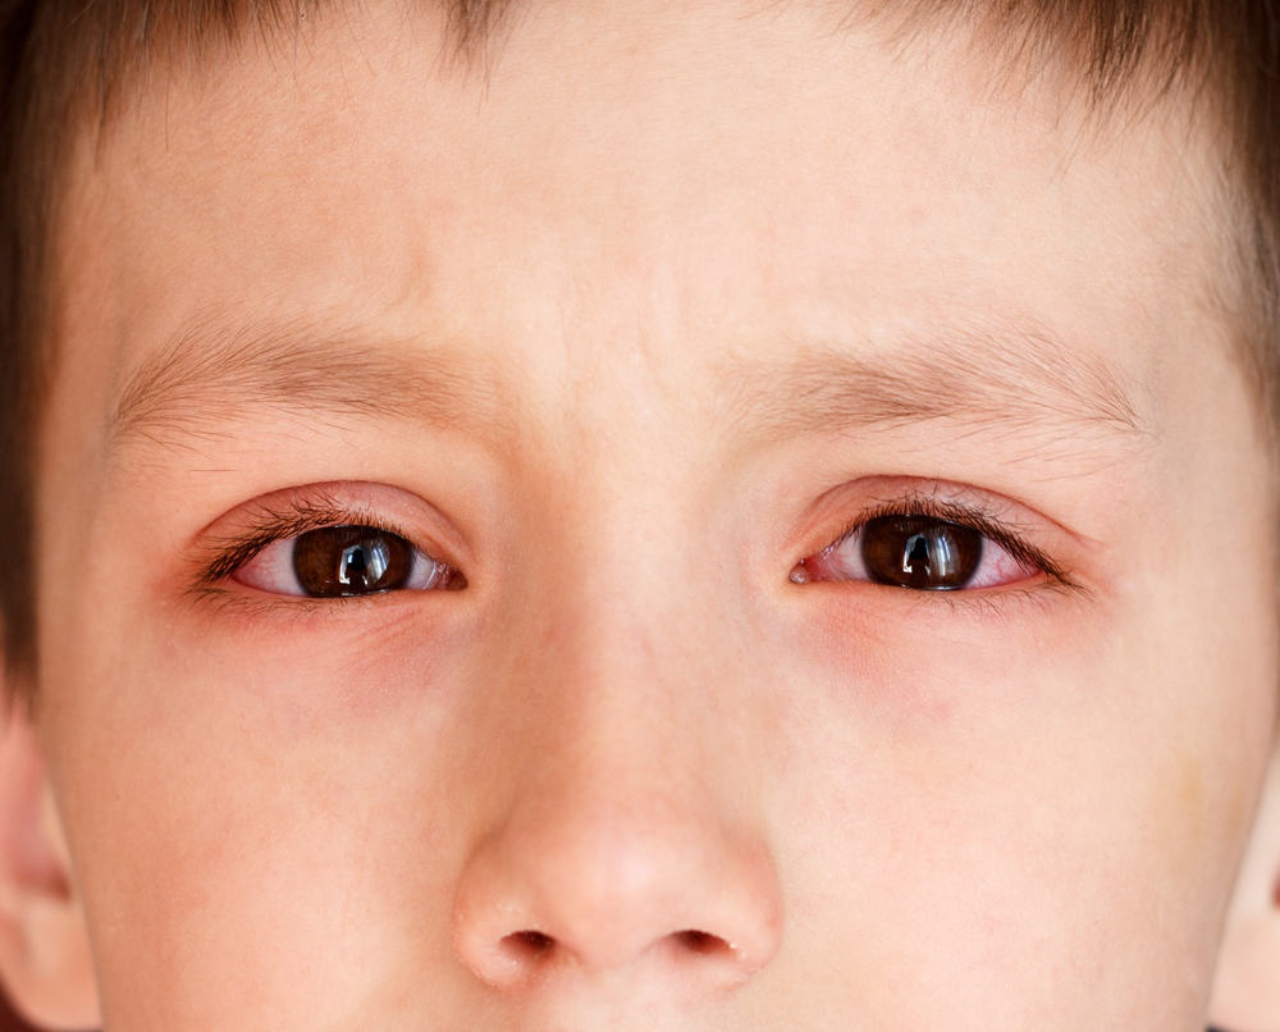 Những biện pháp tự chữa trị tại nhà có thể được áp dụng để giảm đau mắt đỏ?
